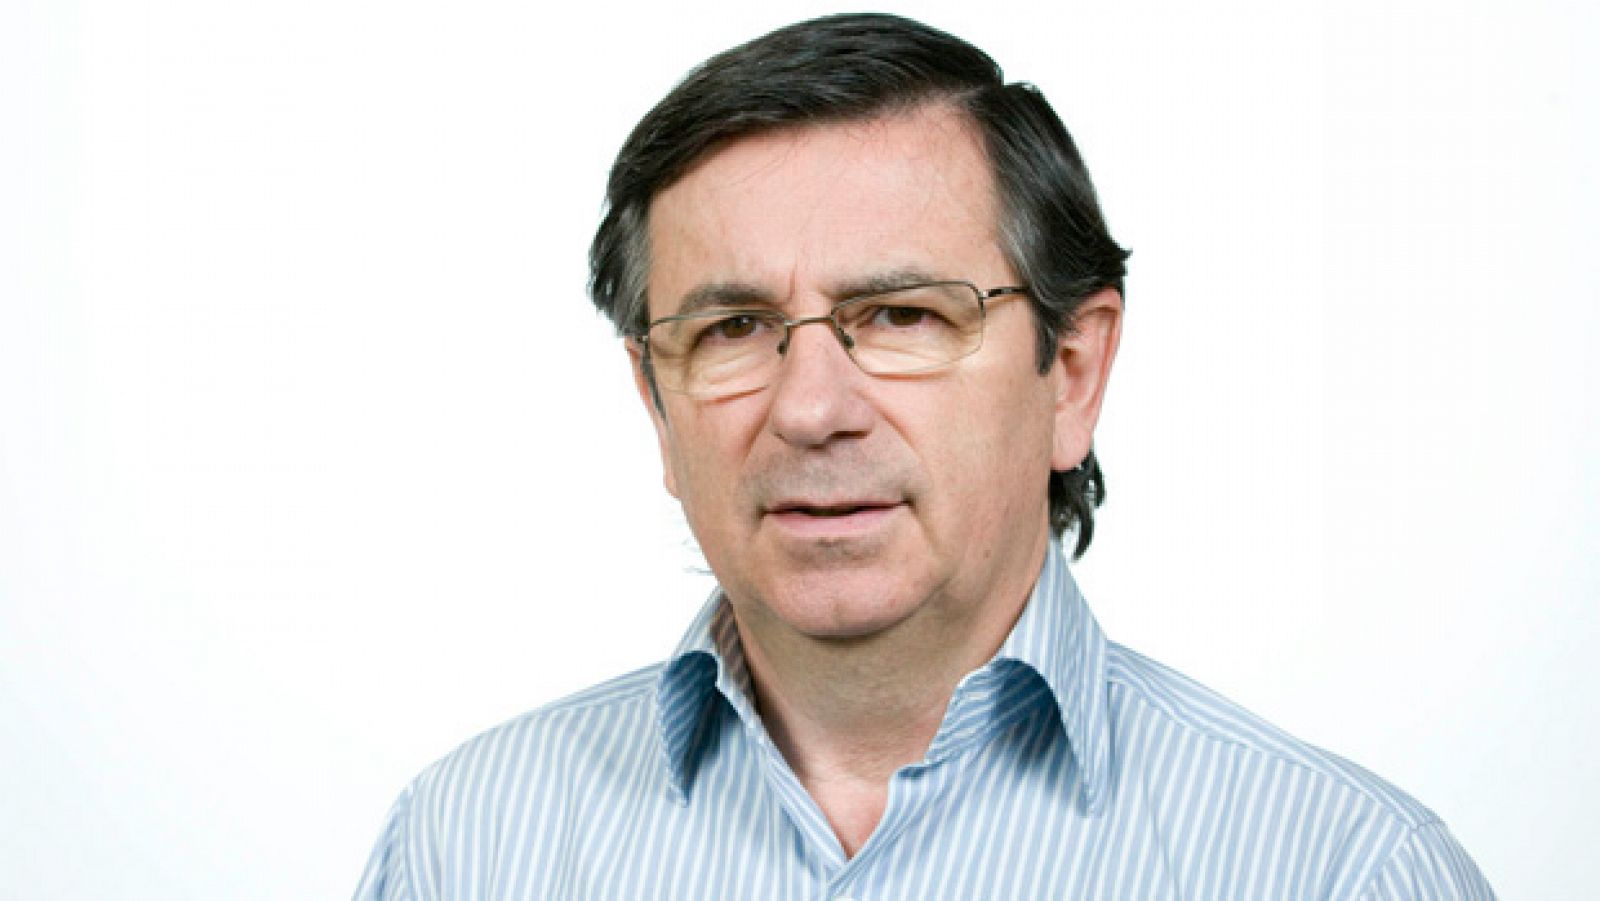 Jorge Javier Sánchez